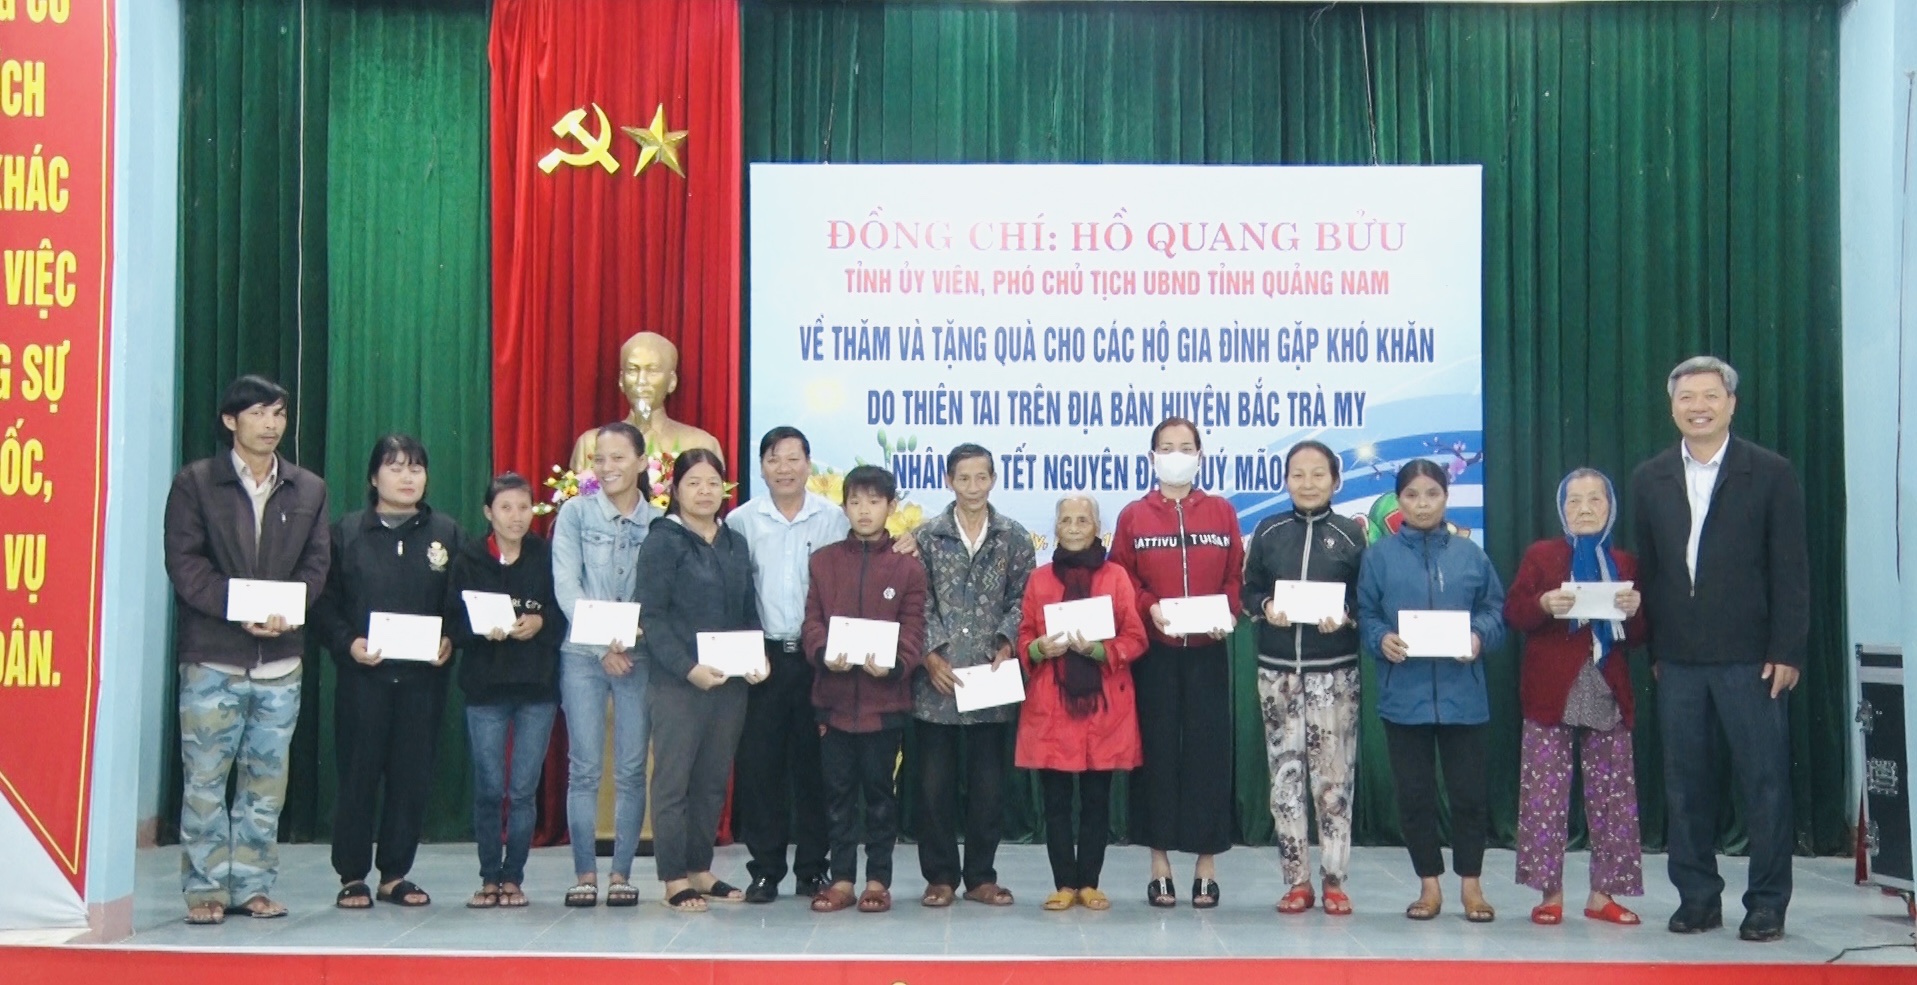 Phó Chủ tịch UBND tỉnh Hồ Quang Bửu thăm, tặng quà tết tại Bắc Trà My